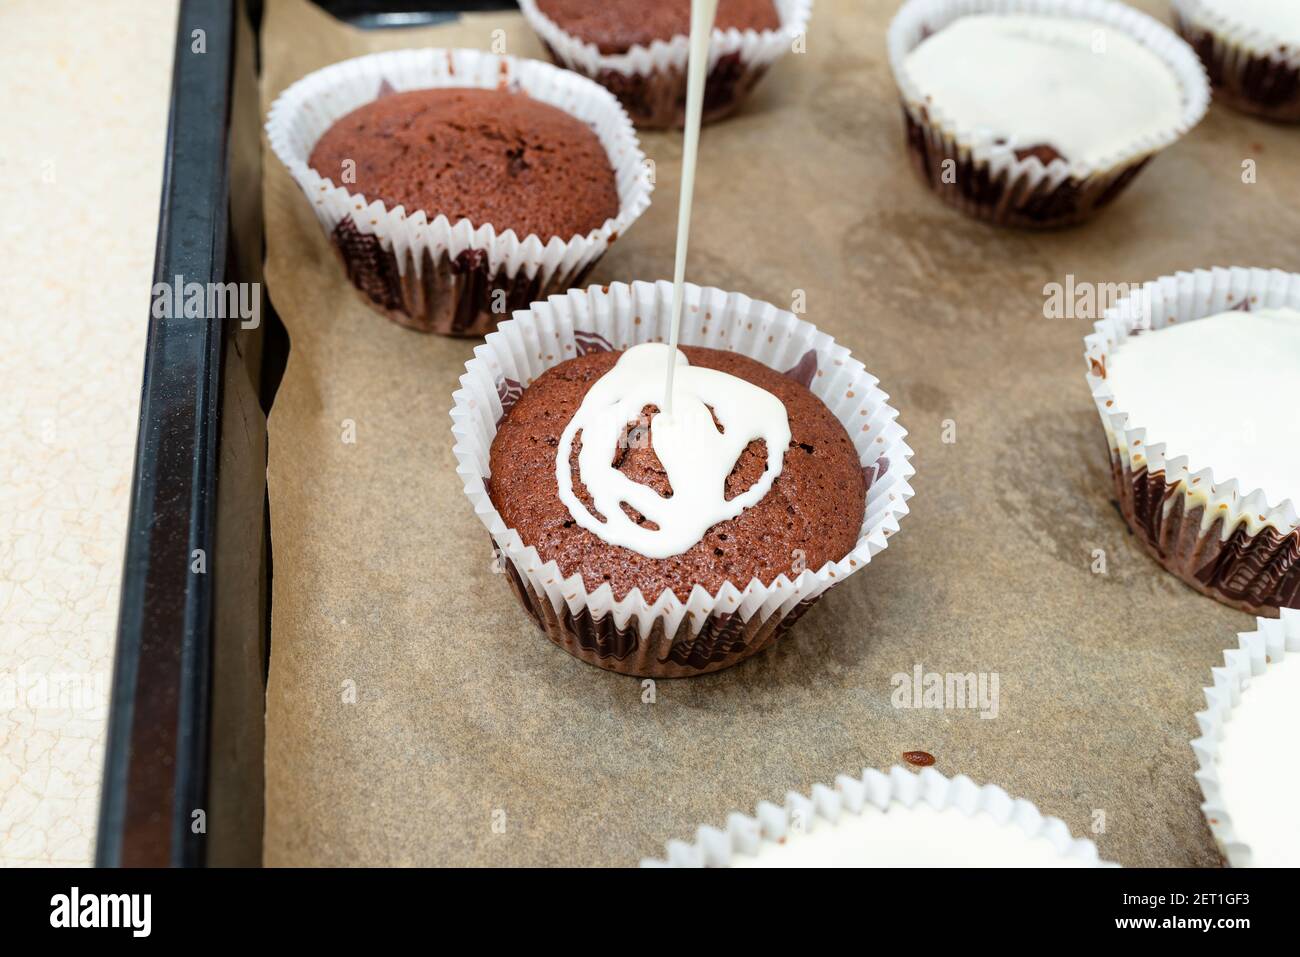 Gâteau au muffin brun chocolat enveloppé de papier blanc et recouvert de  glaçage blanc, cuit au four, allongé sur du papier de cuisson Photo Stock -  Alamy